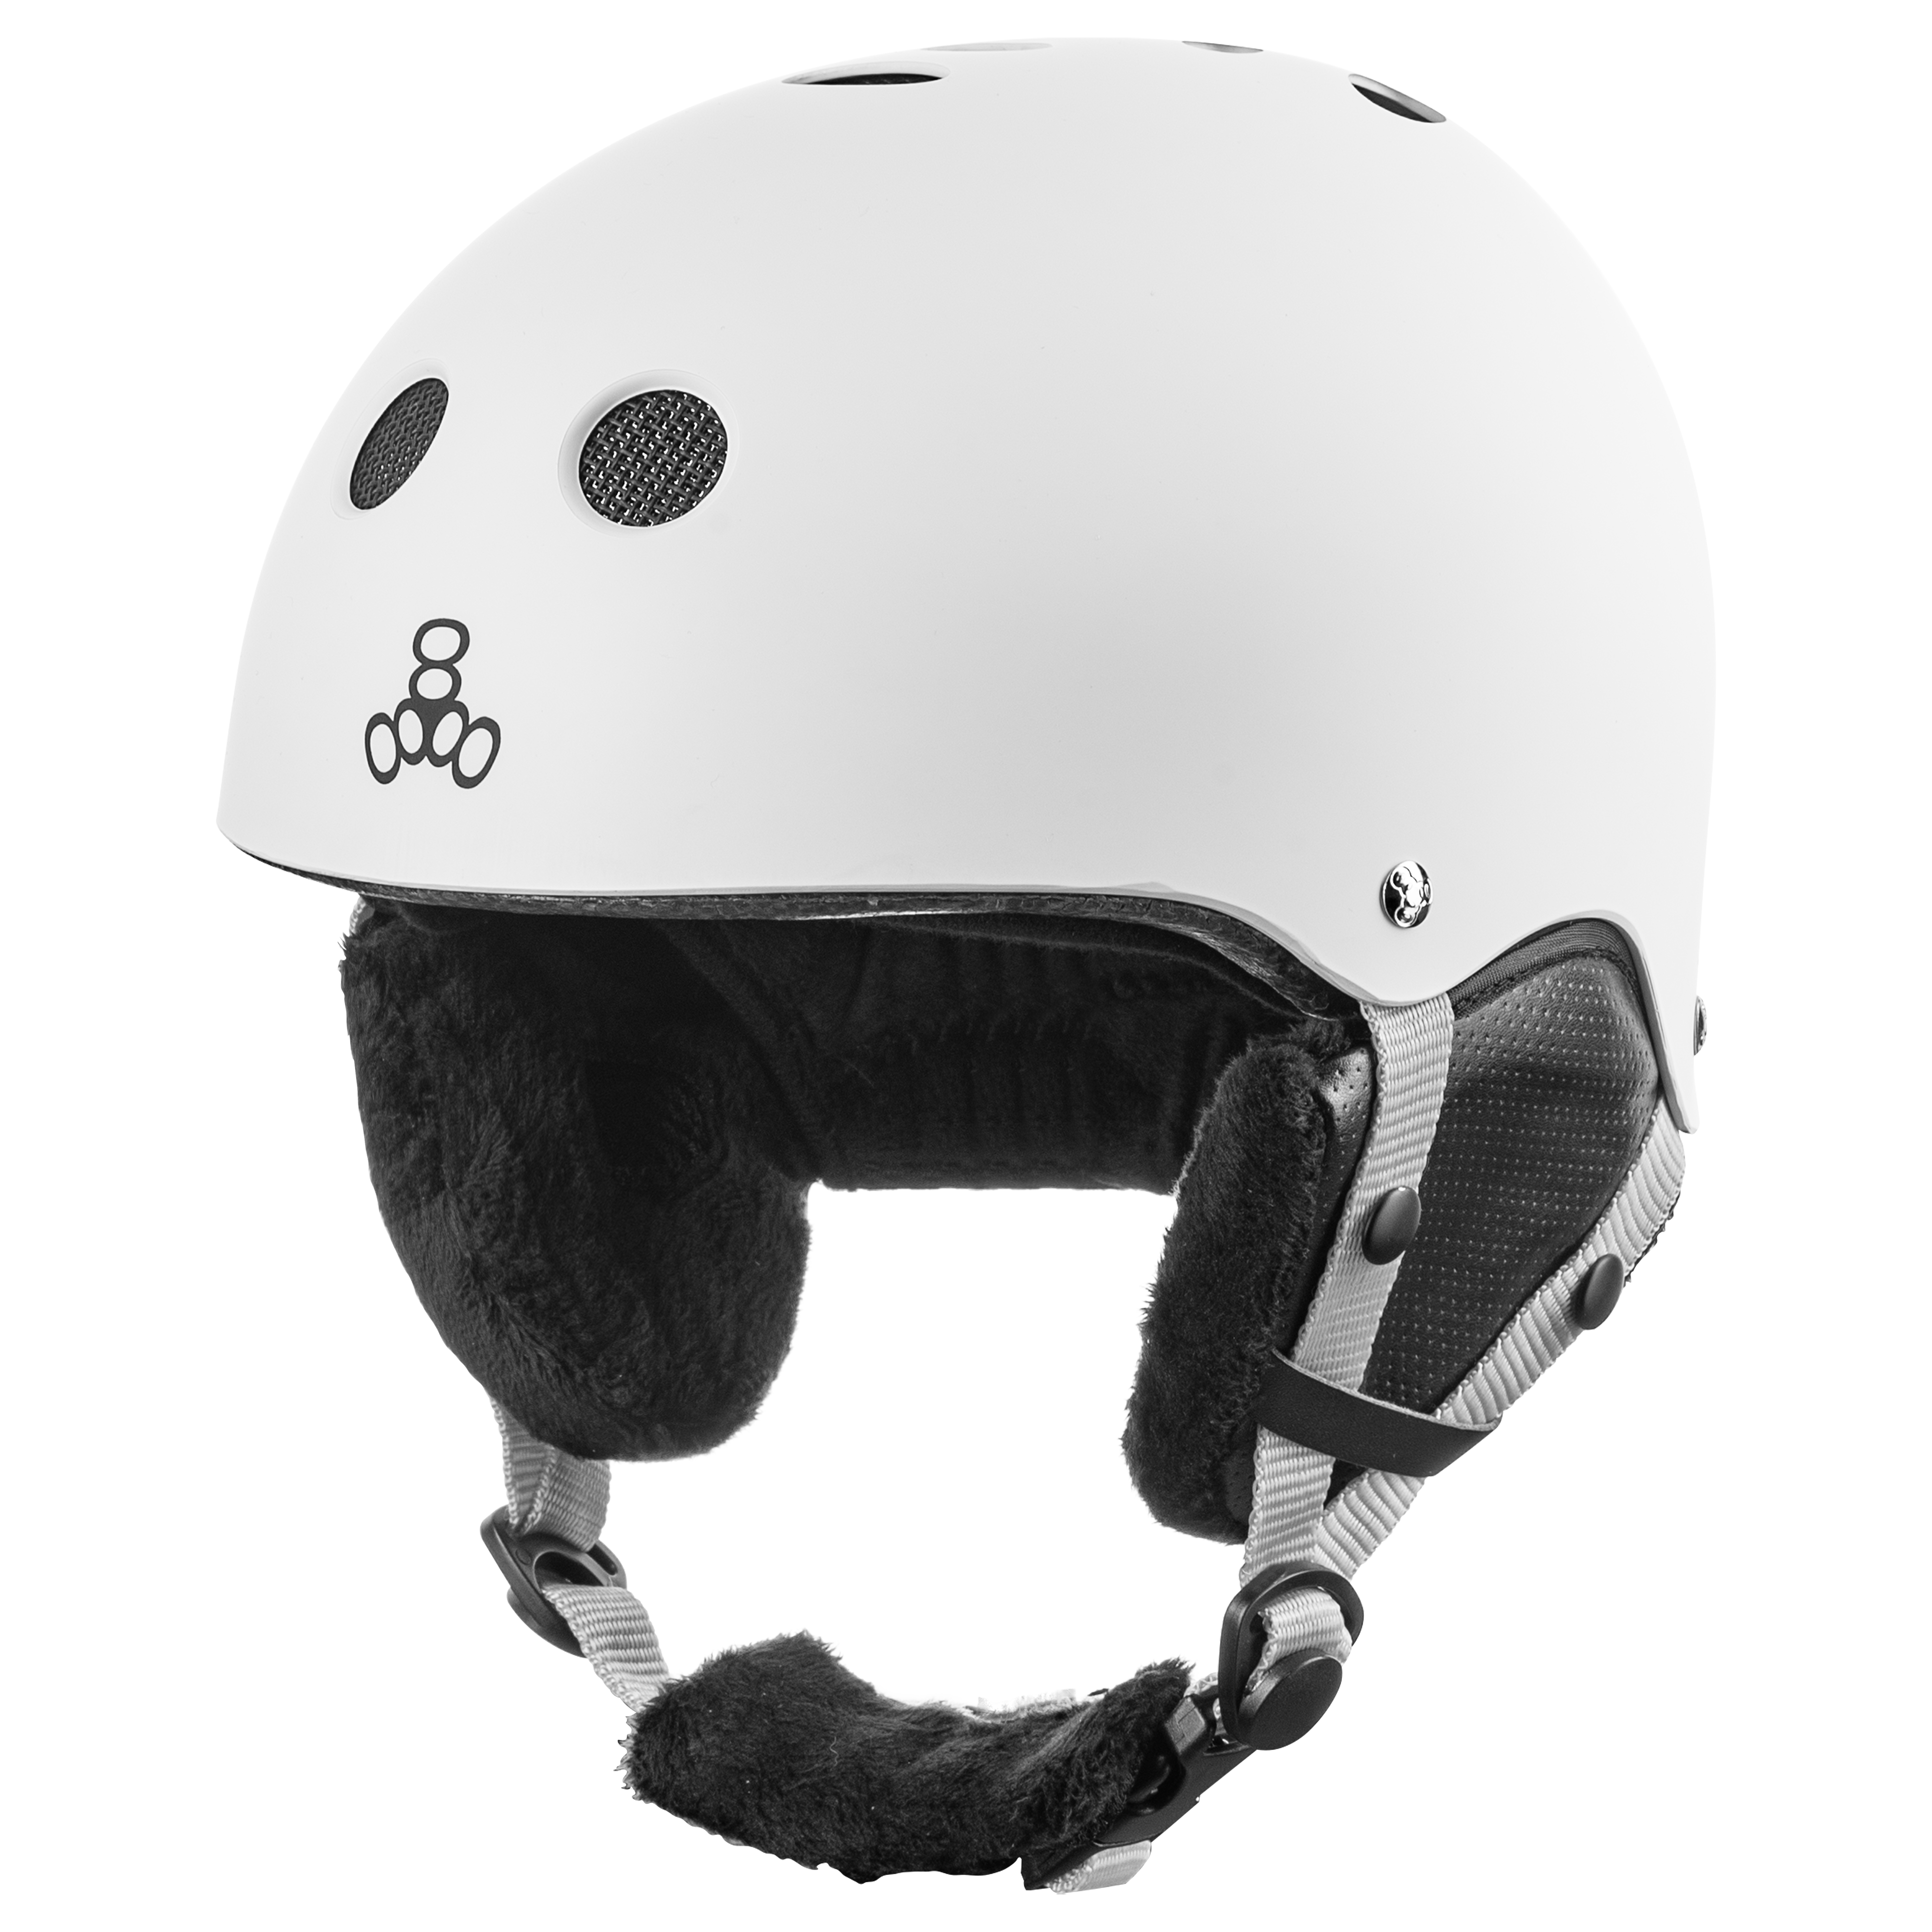 Купить защитный шлем для взрослых Triple8 Halo Snow Standart White Rubber (S/M) в Киеве